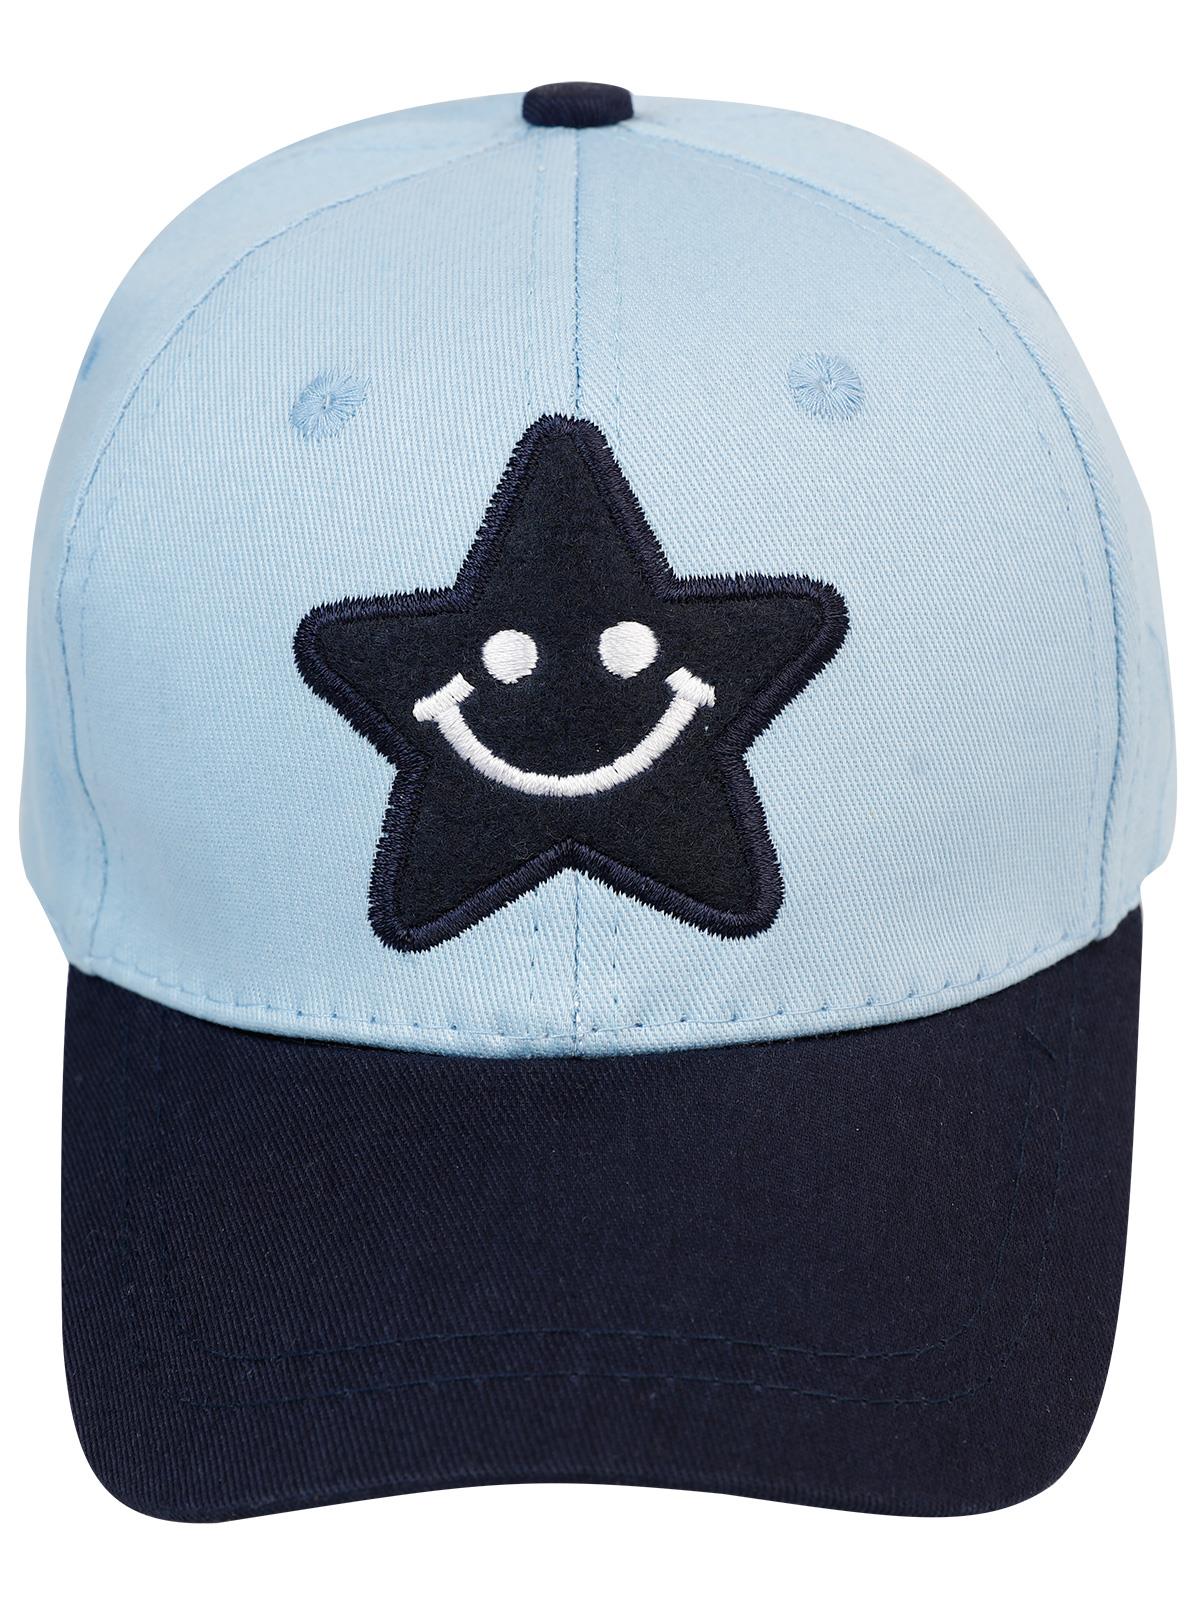 Tidi Erkek Çocuk Kep Şapka 2-5 Yaş Mavi